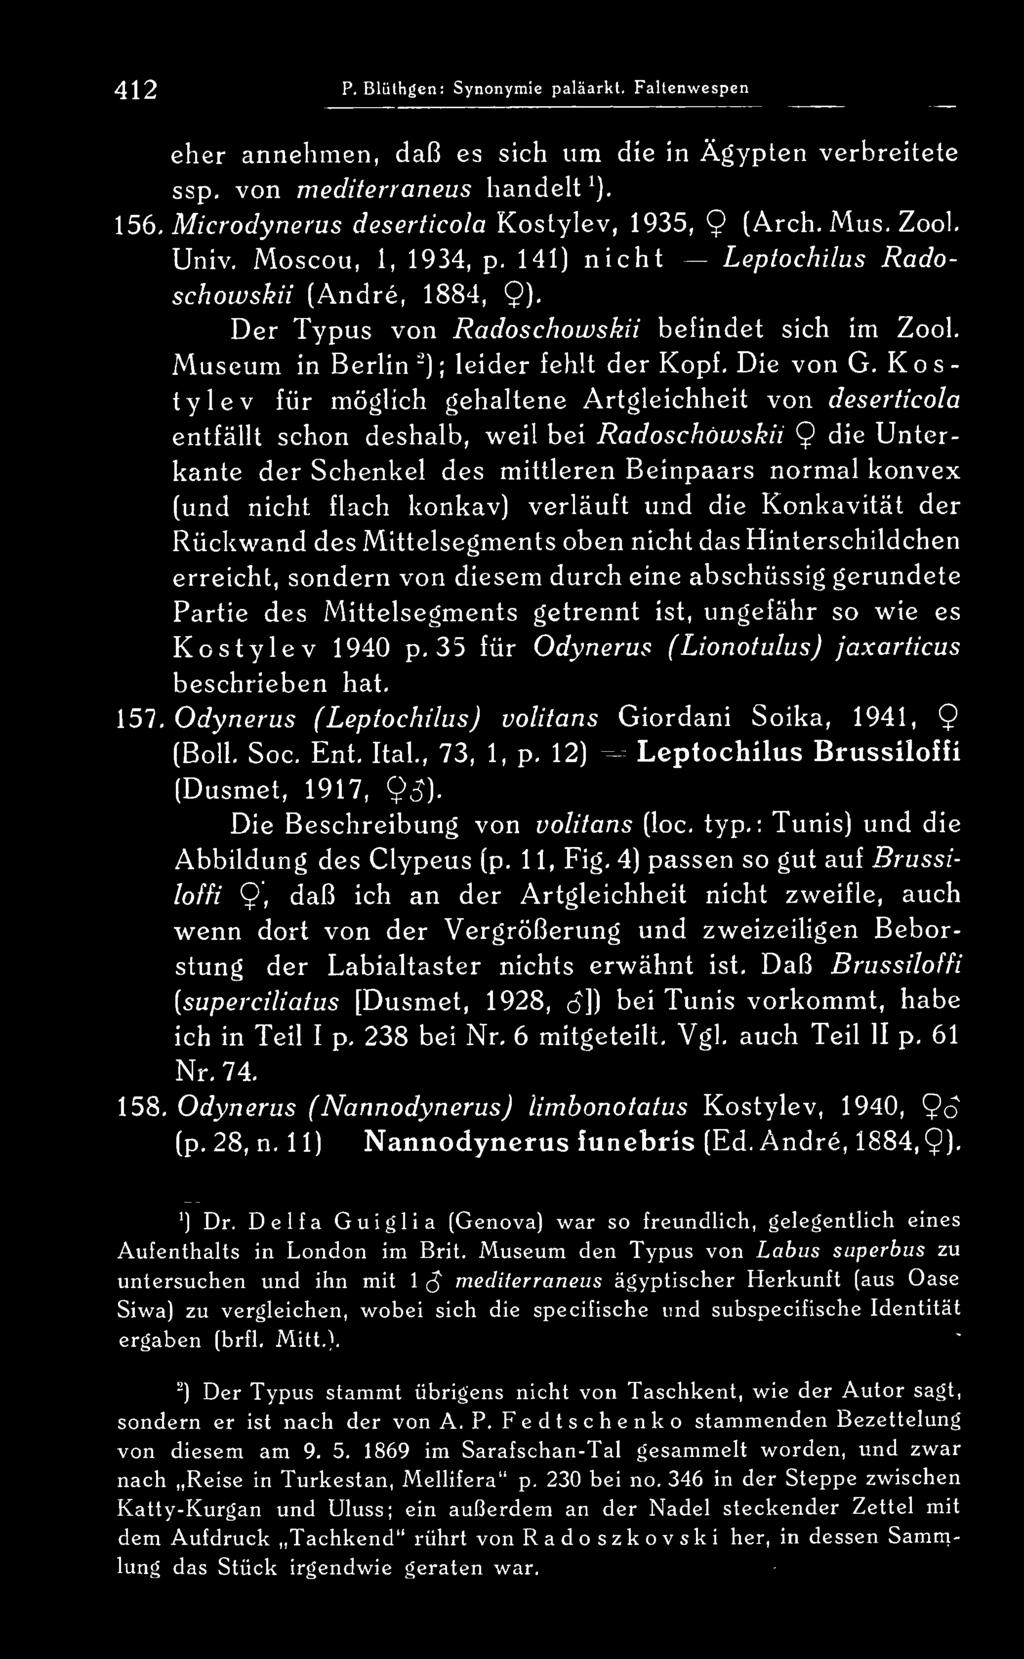 Moscou, 1, 1934, p, 141) nicht ^ Leptochilus Radoschowskii (Andre, 1884, 9)- Der Typus von Radoschowskii befindet sich im Zool. Museum in Berlin -) ; leider fehlt der Kopf- Die von G.